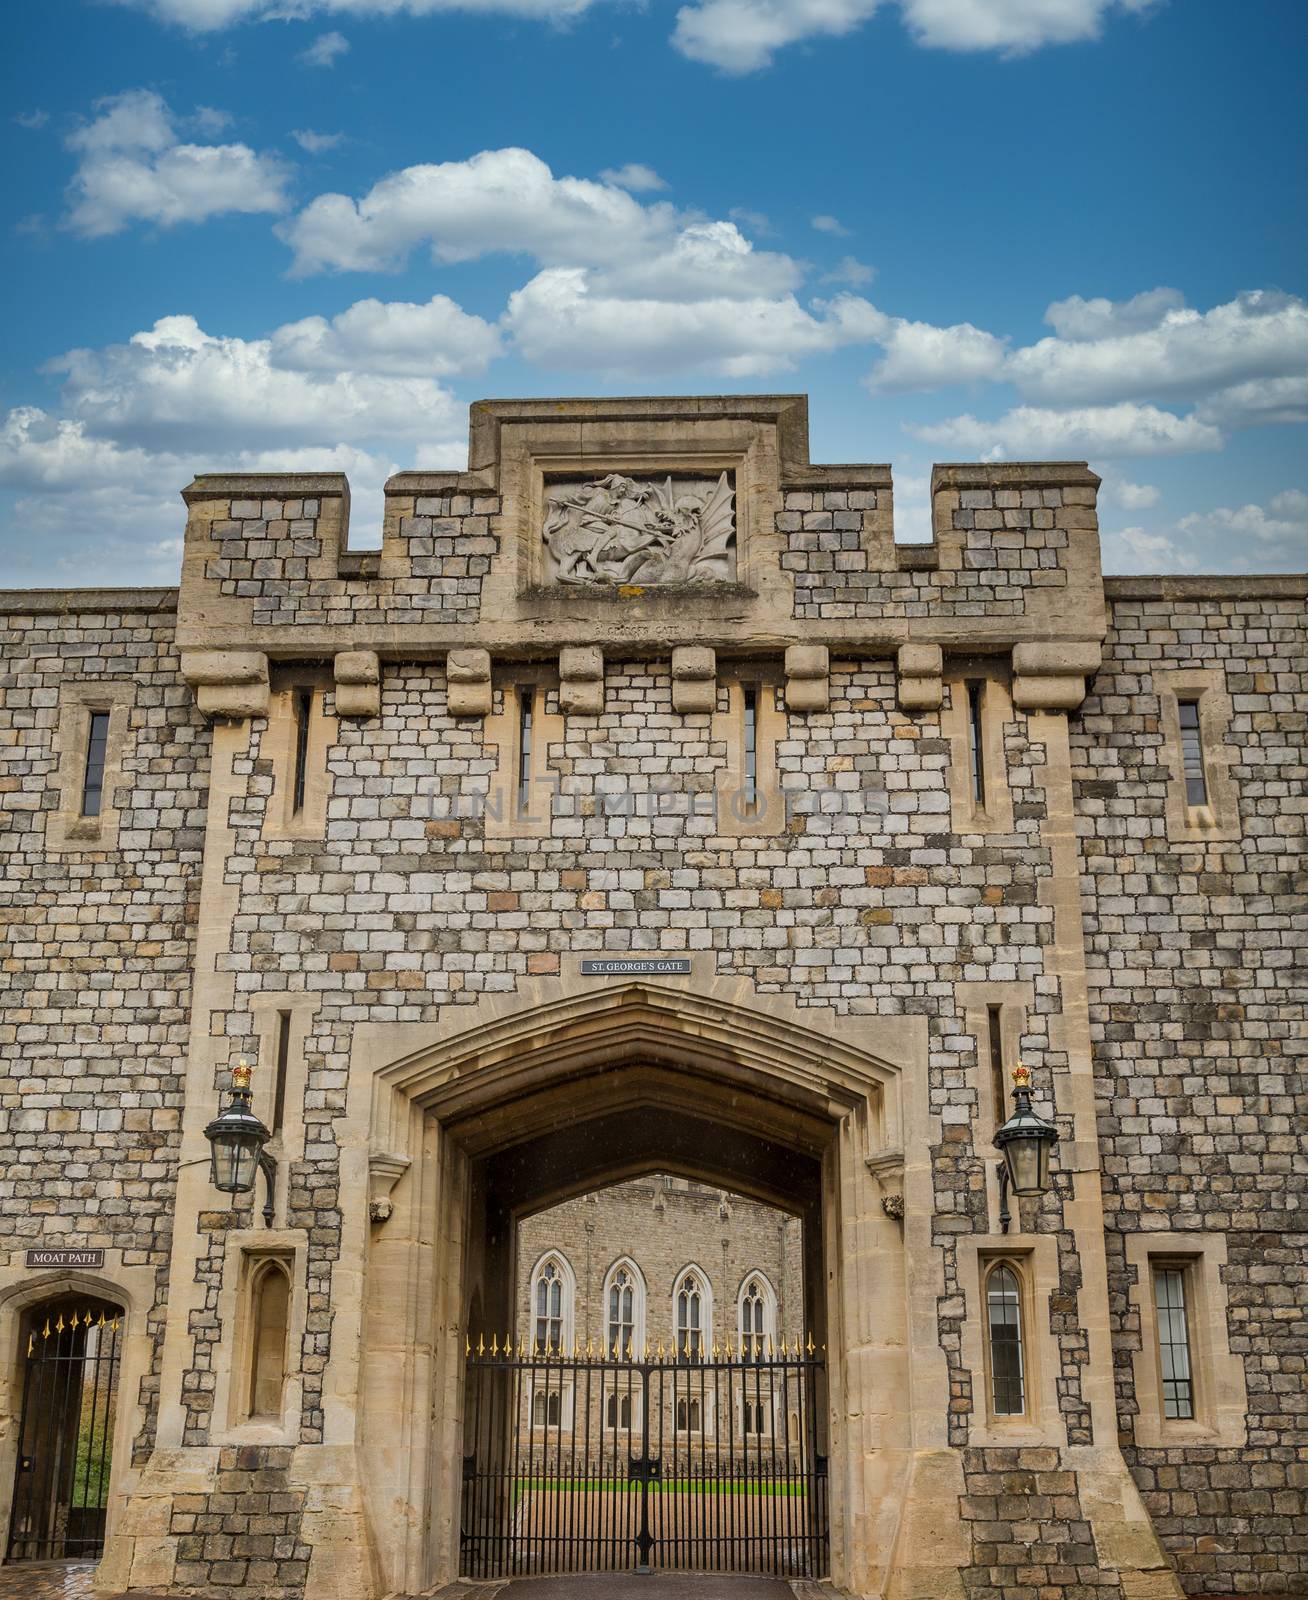 Details on Windsor Castle in Windsor, England